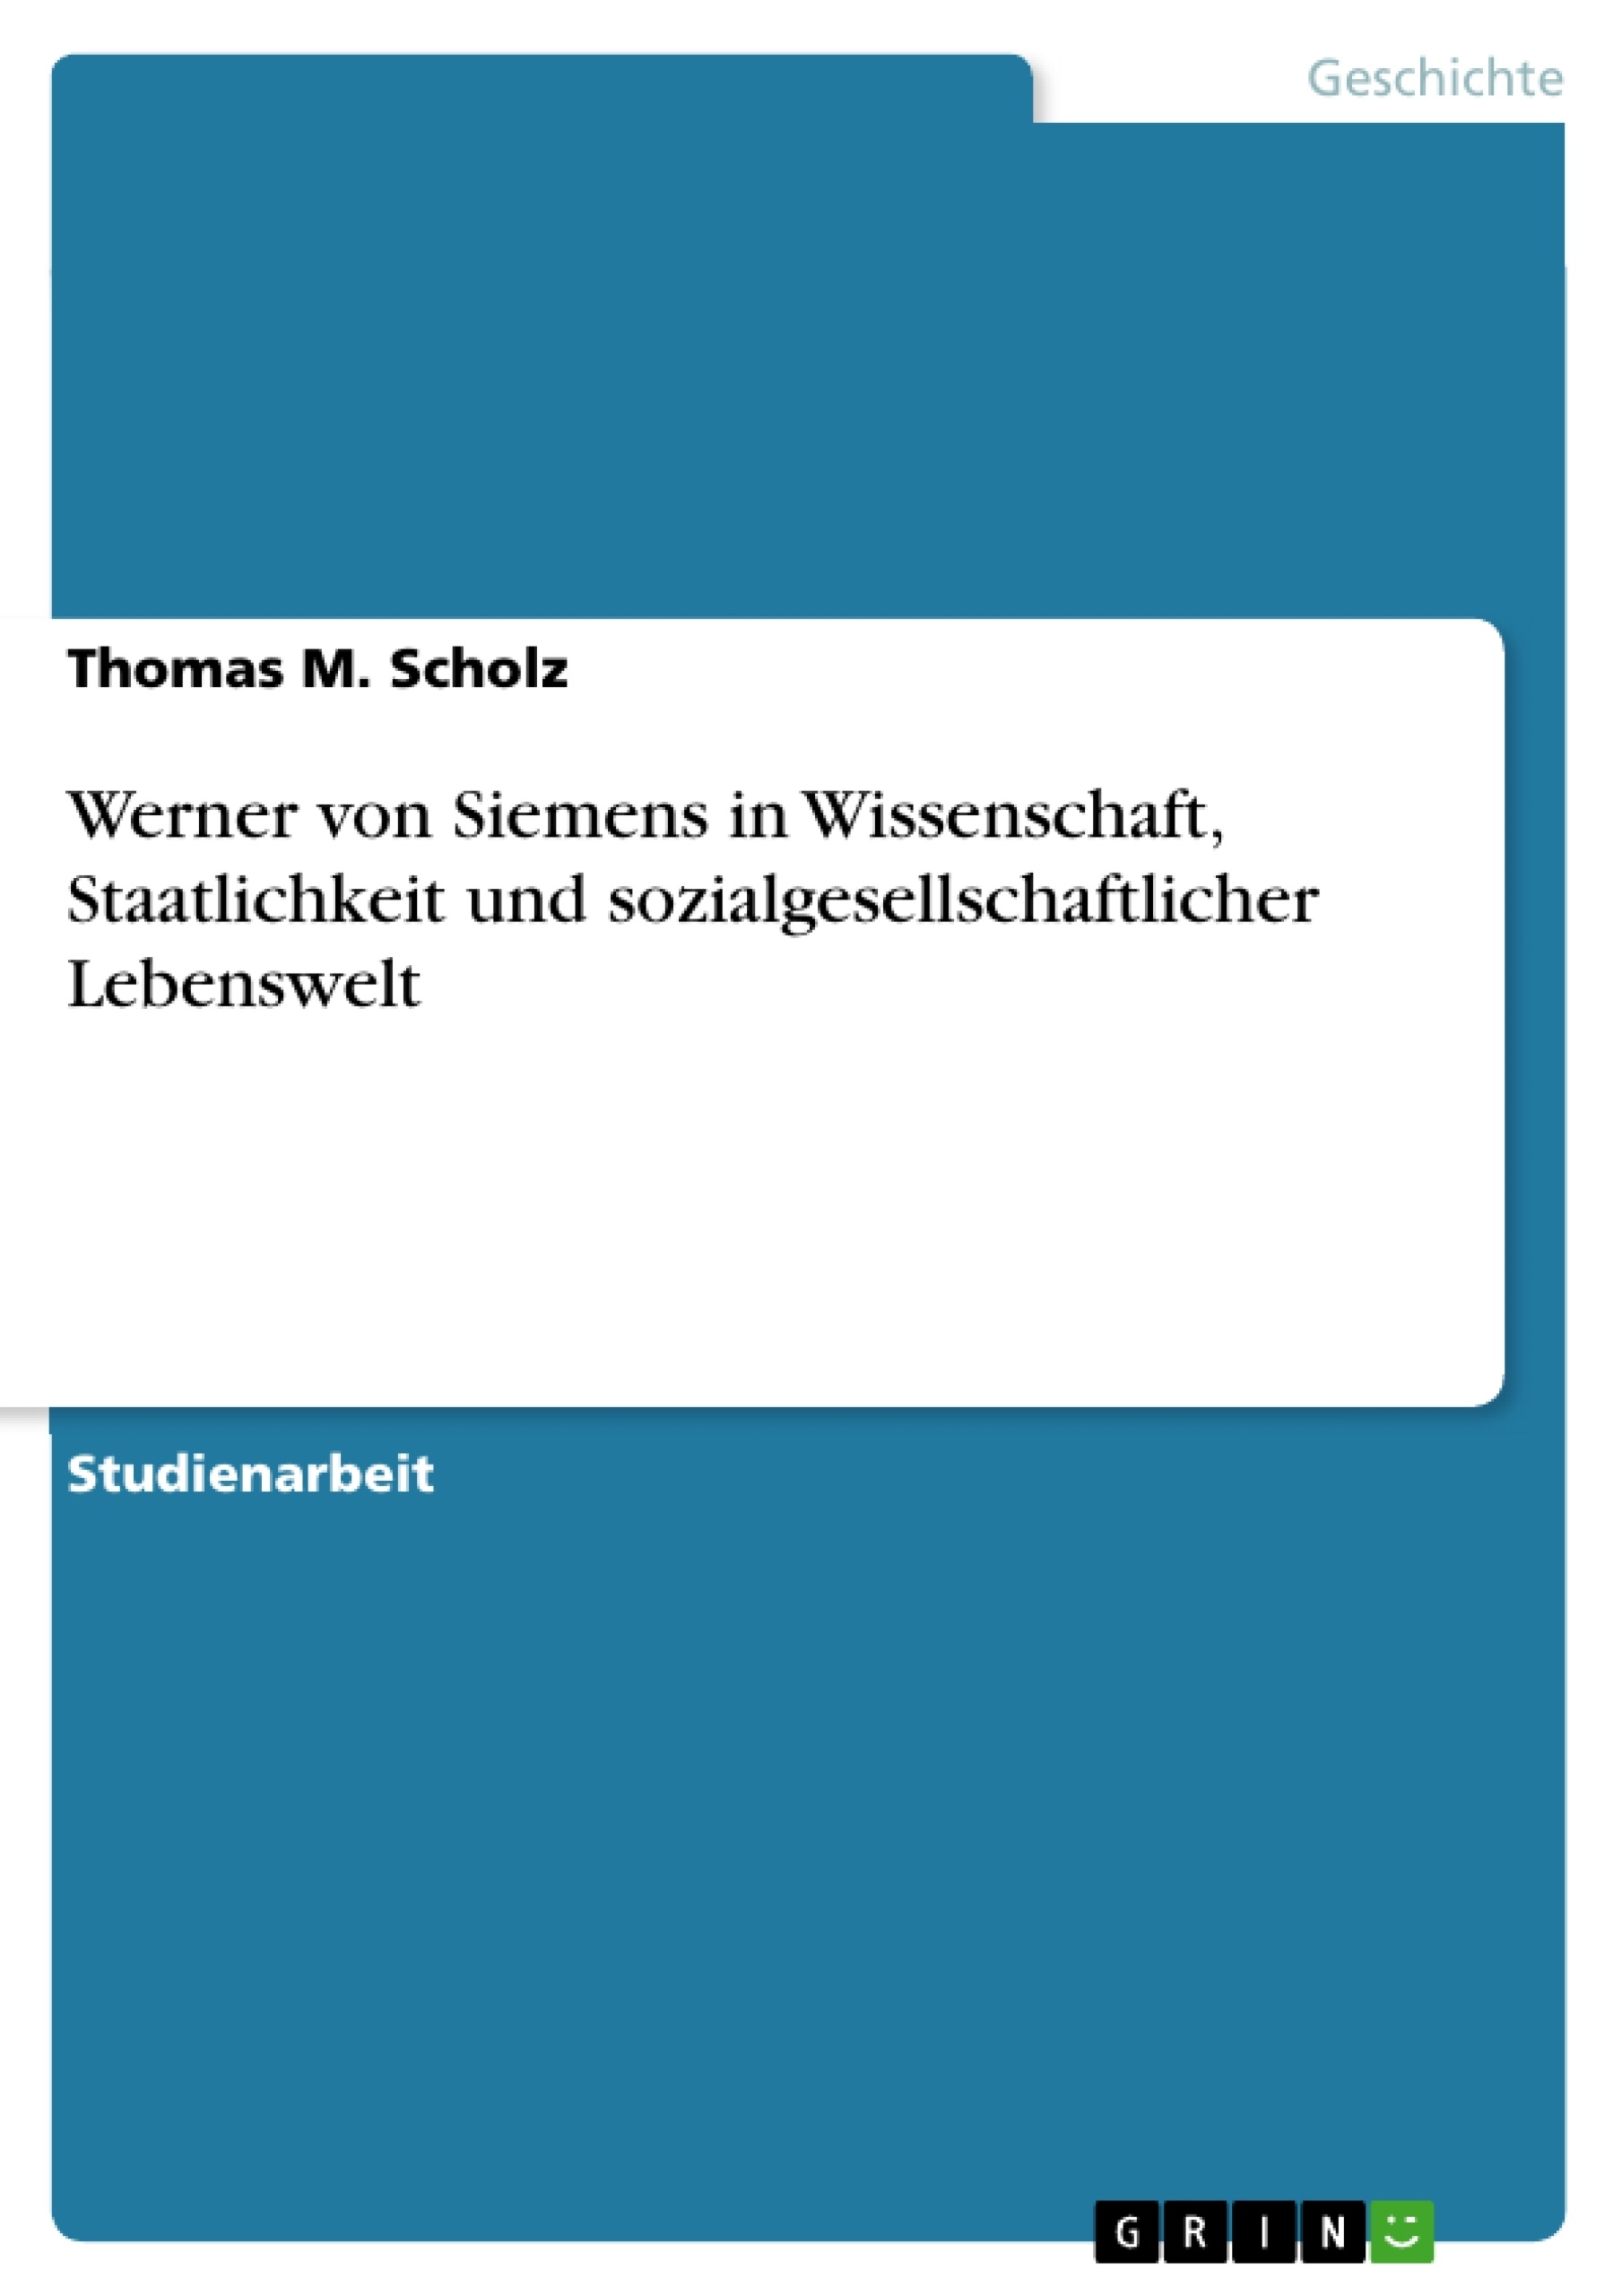 Title: Werner von Siemens in Wissenschaft, Staatlichkeit und sozialgesellschaftlicher Lebenswelt